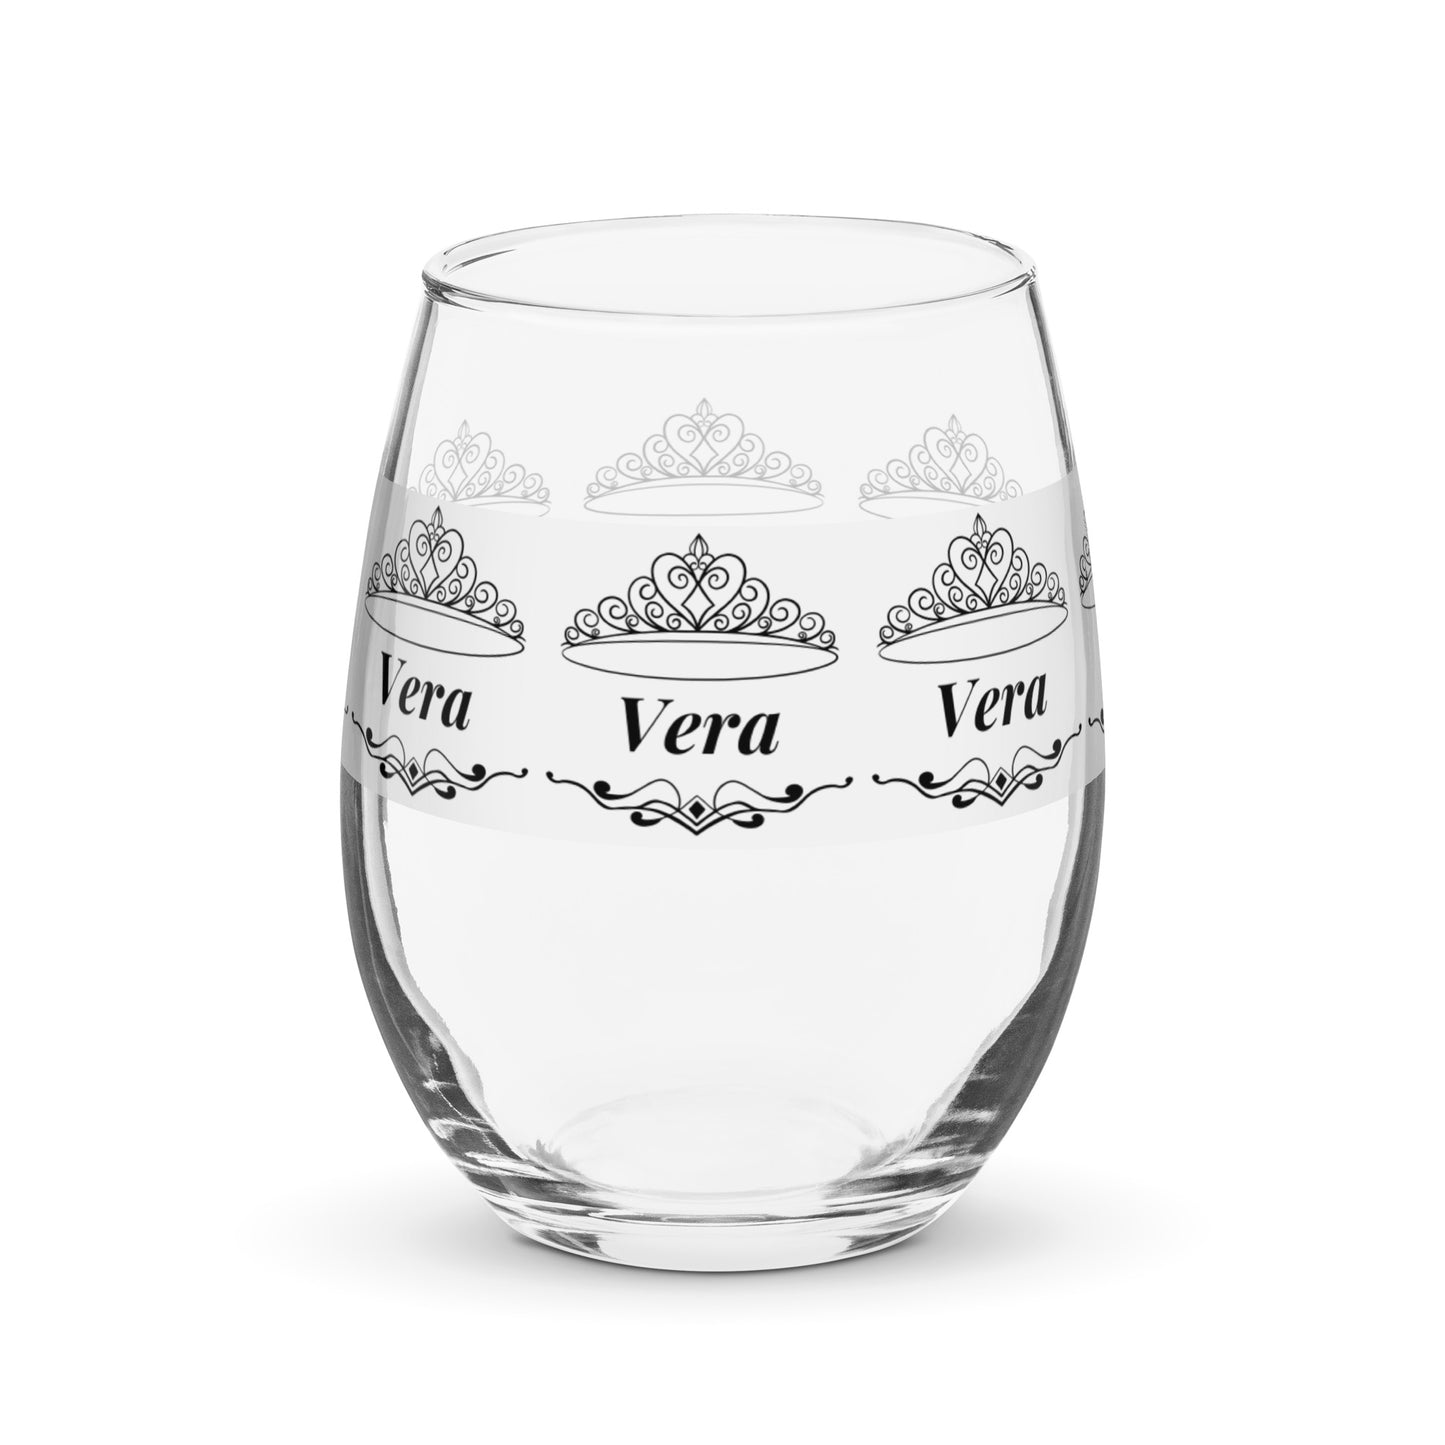 nombre copa de vino copa de vino personalizada Copa de vino Vera